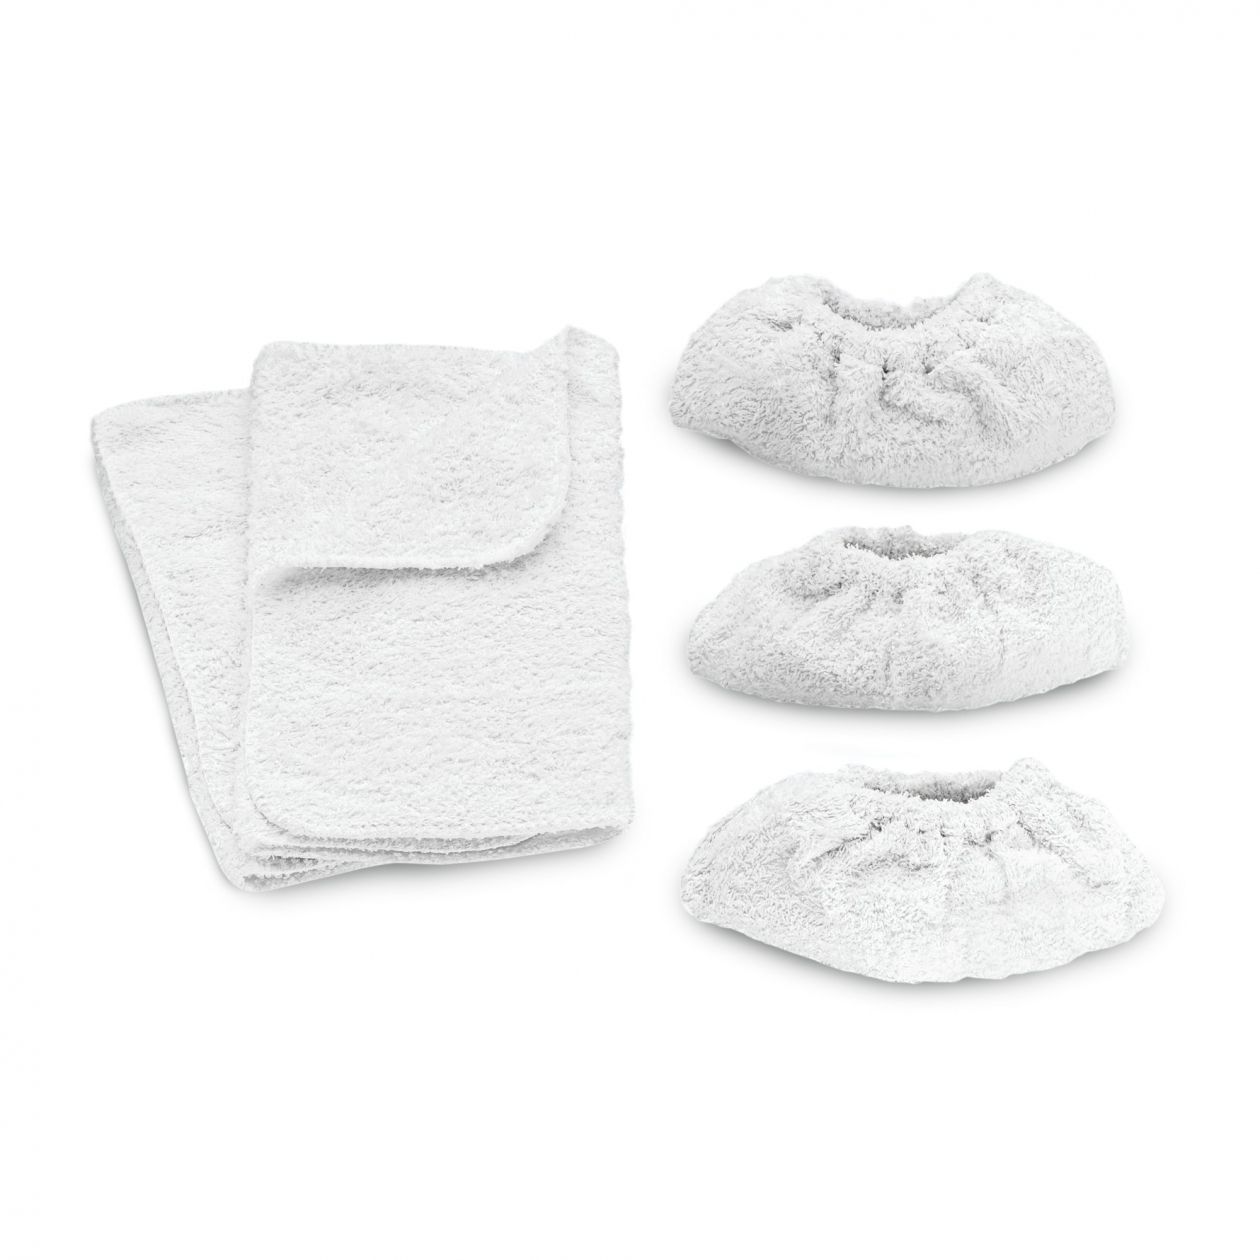 Комплект салфеток из махровой ткани Karcher для половых насадок, 5 шт.